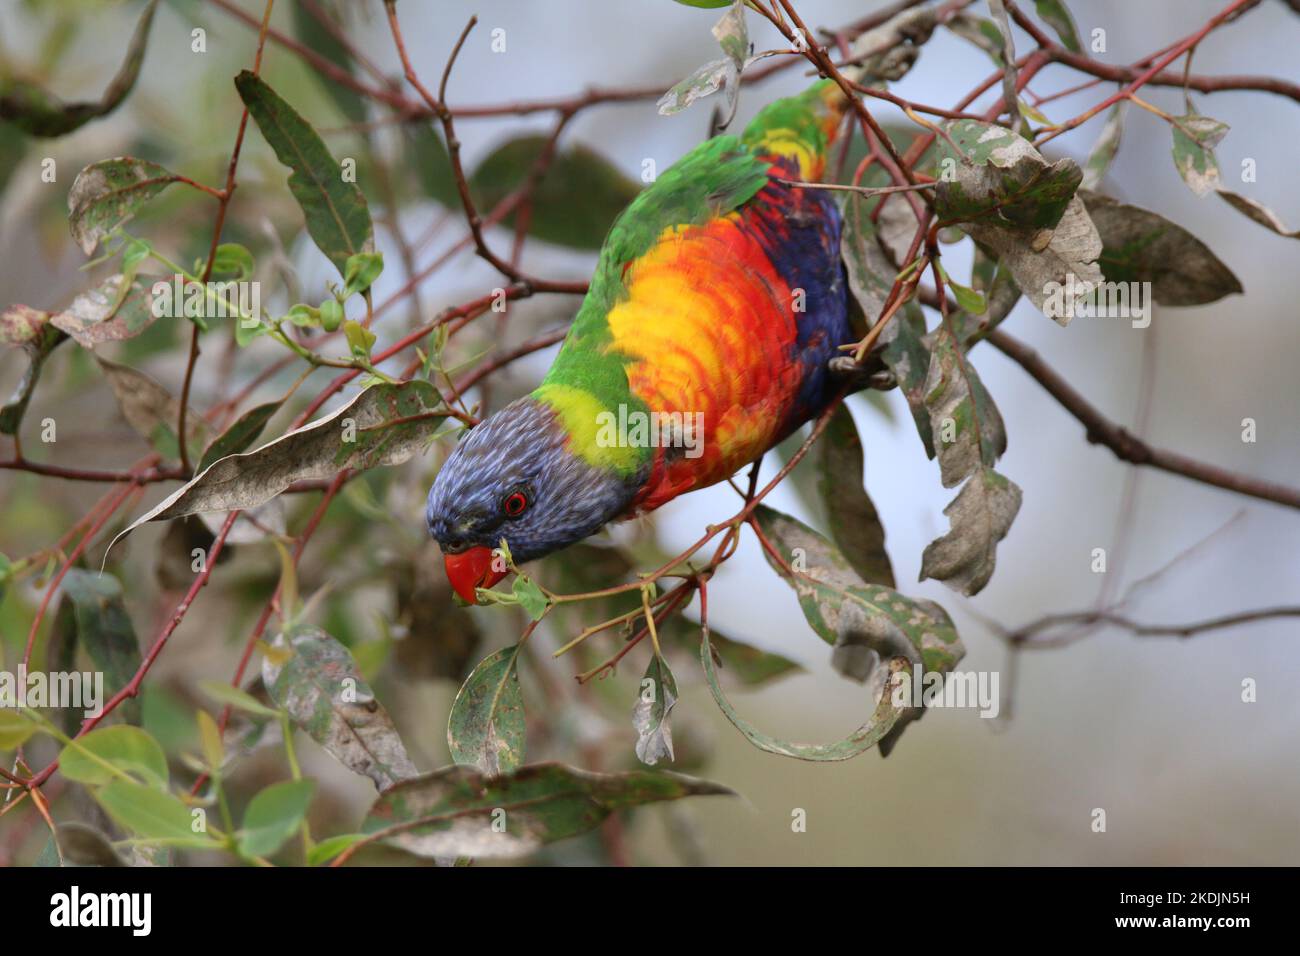 An Australian Rainbow Lorikeet. Stock Photo